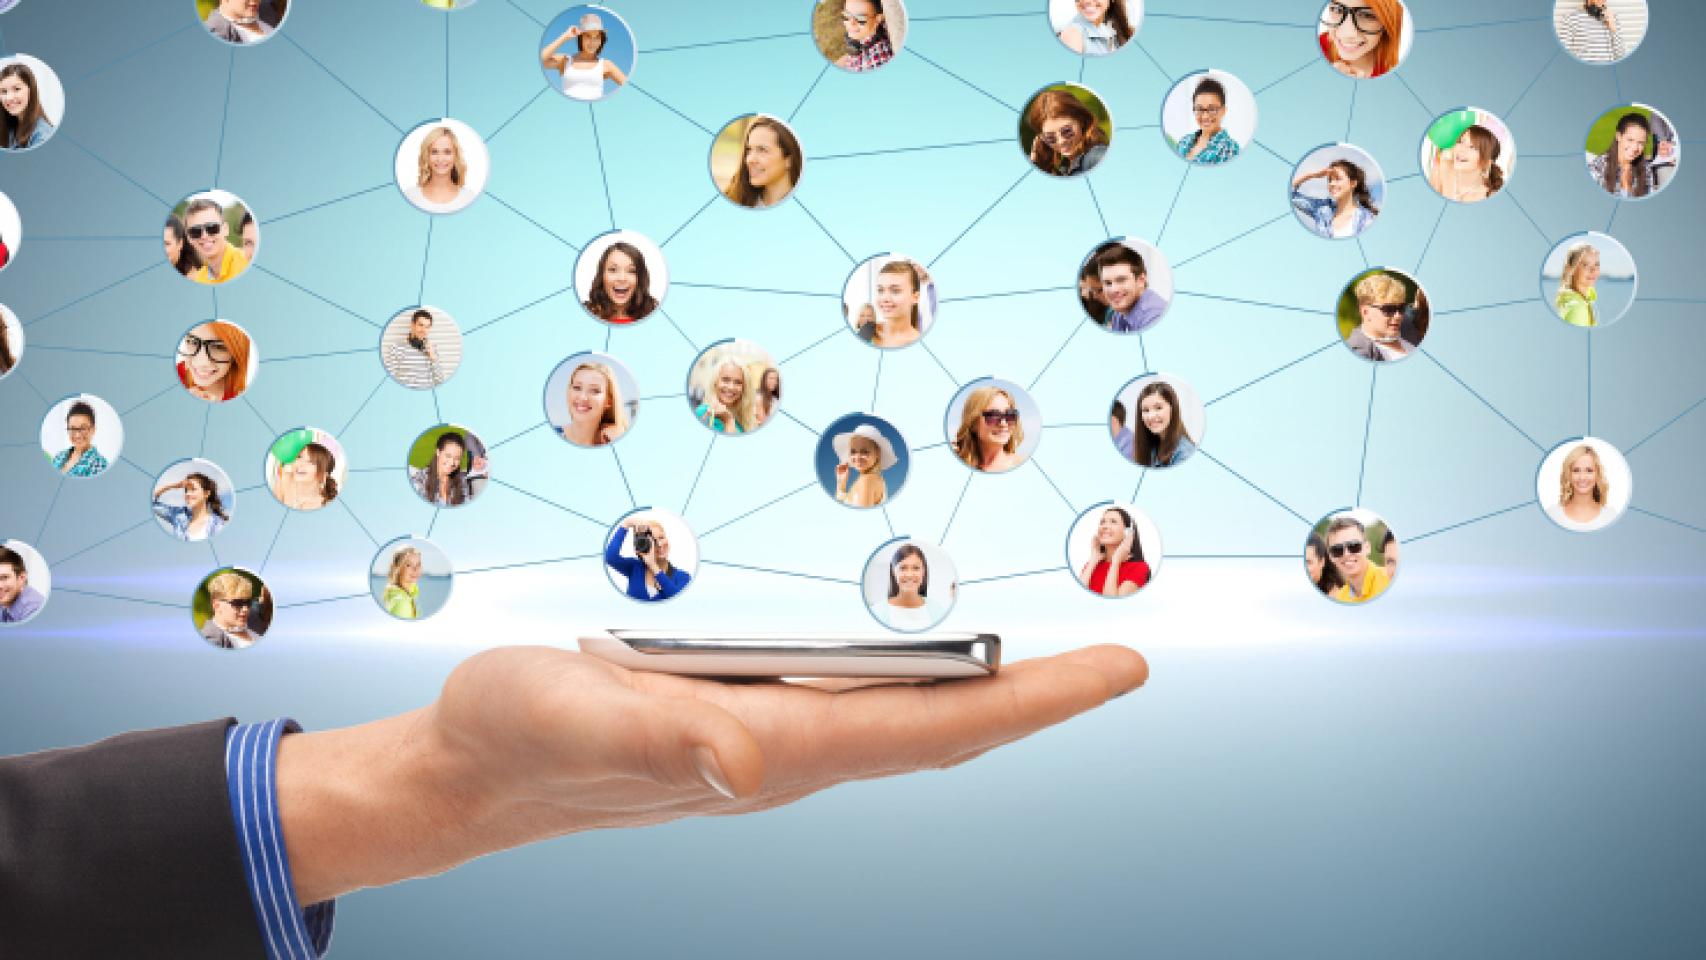 La agenda de contactos es la verdadera red social en la era móvil